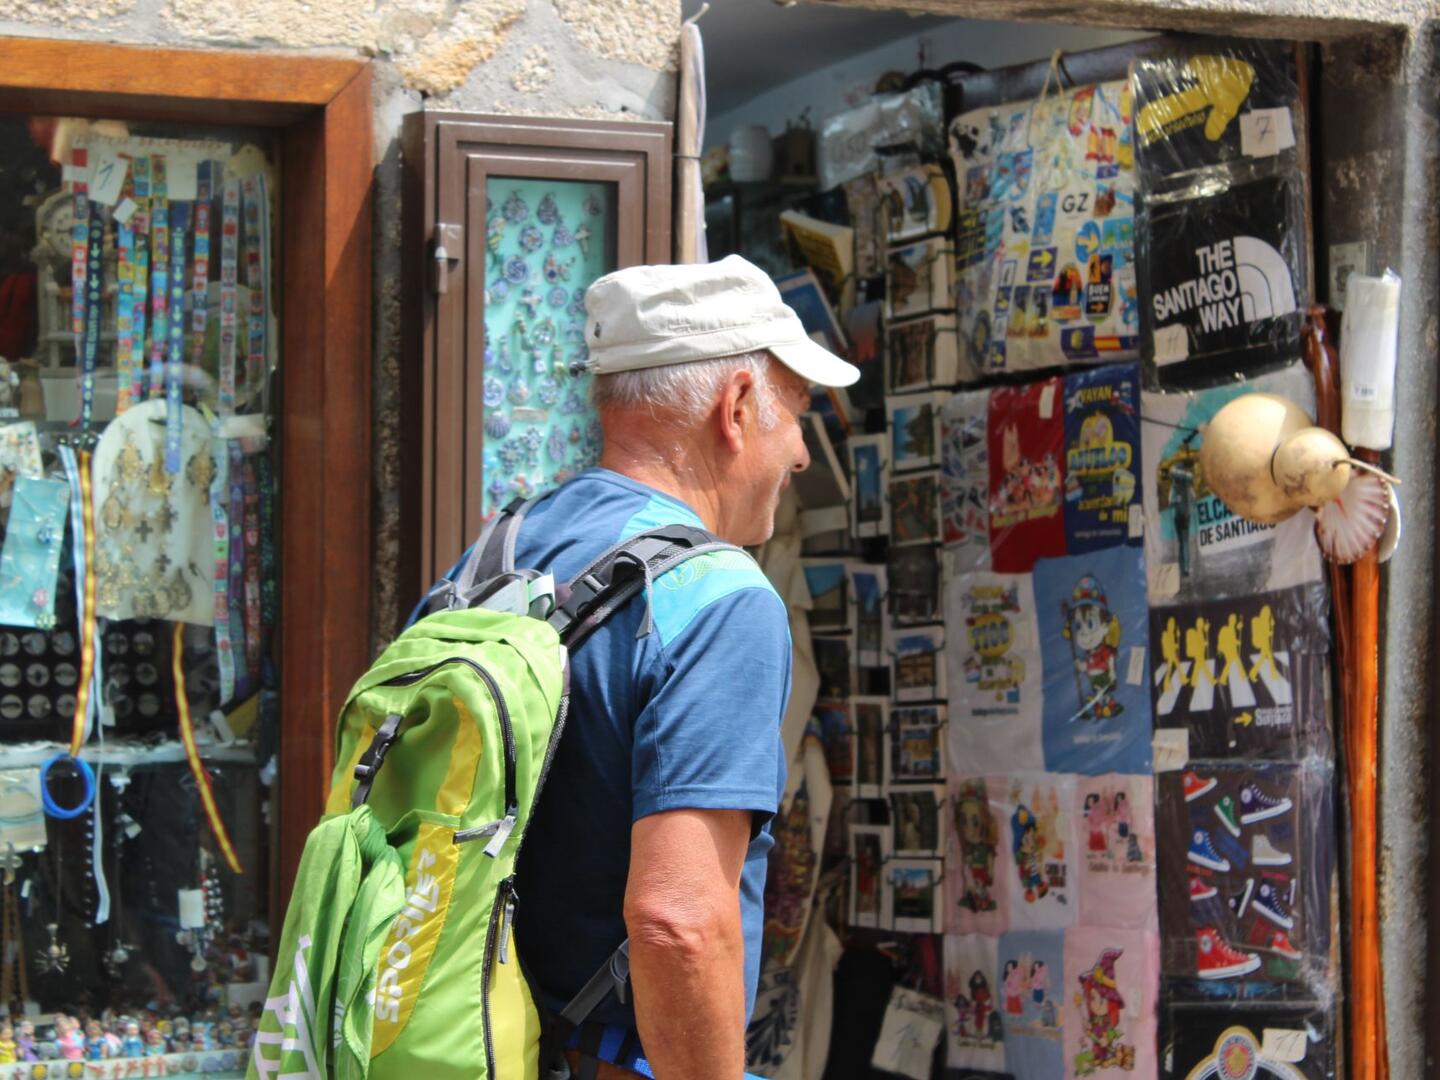 Mochila Camino de santiago, souvenirs y recuerdos peregrinos